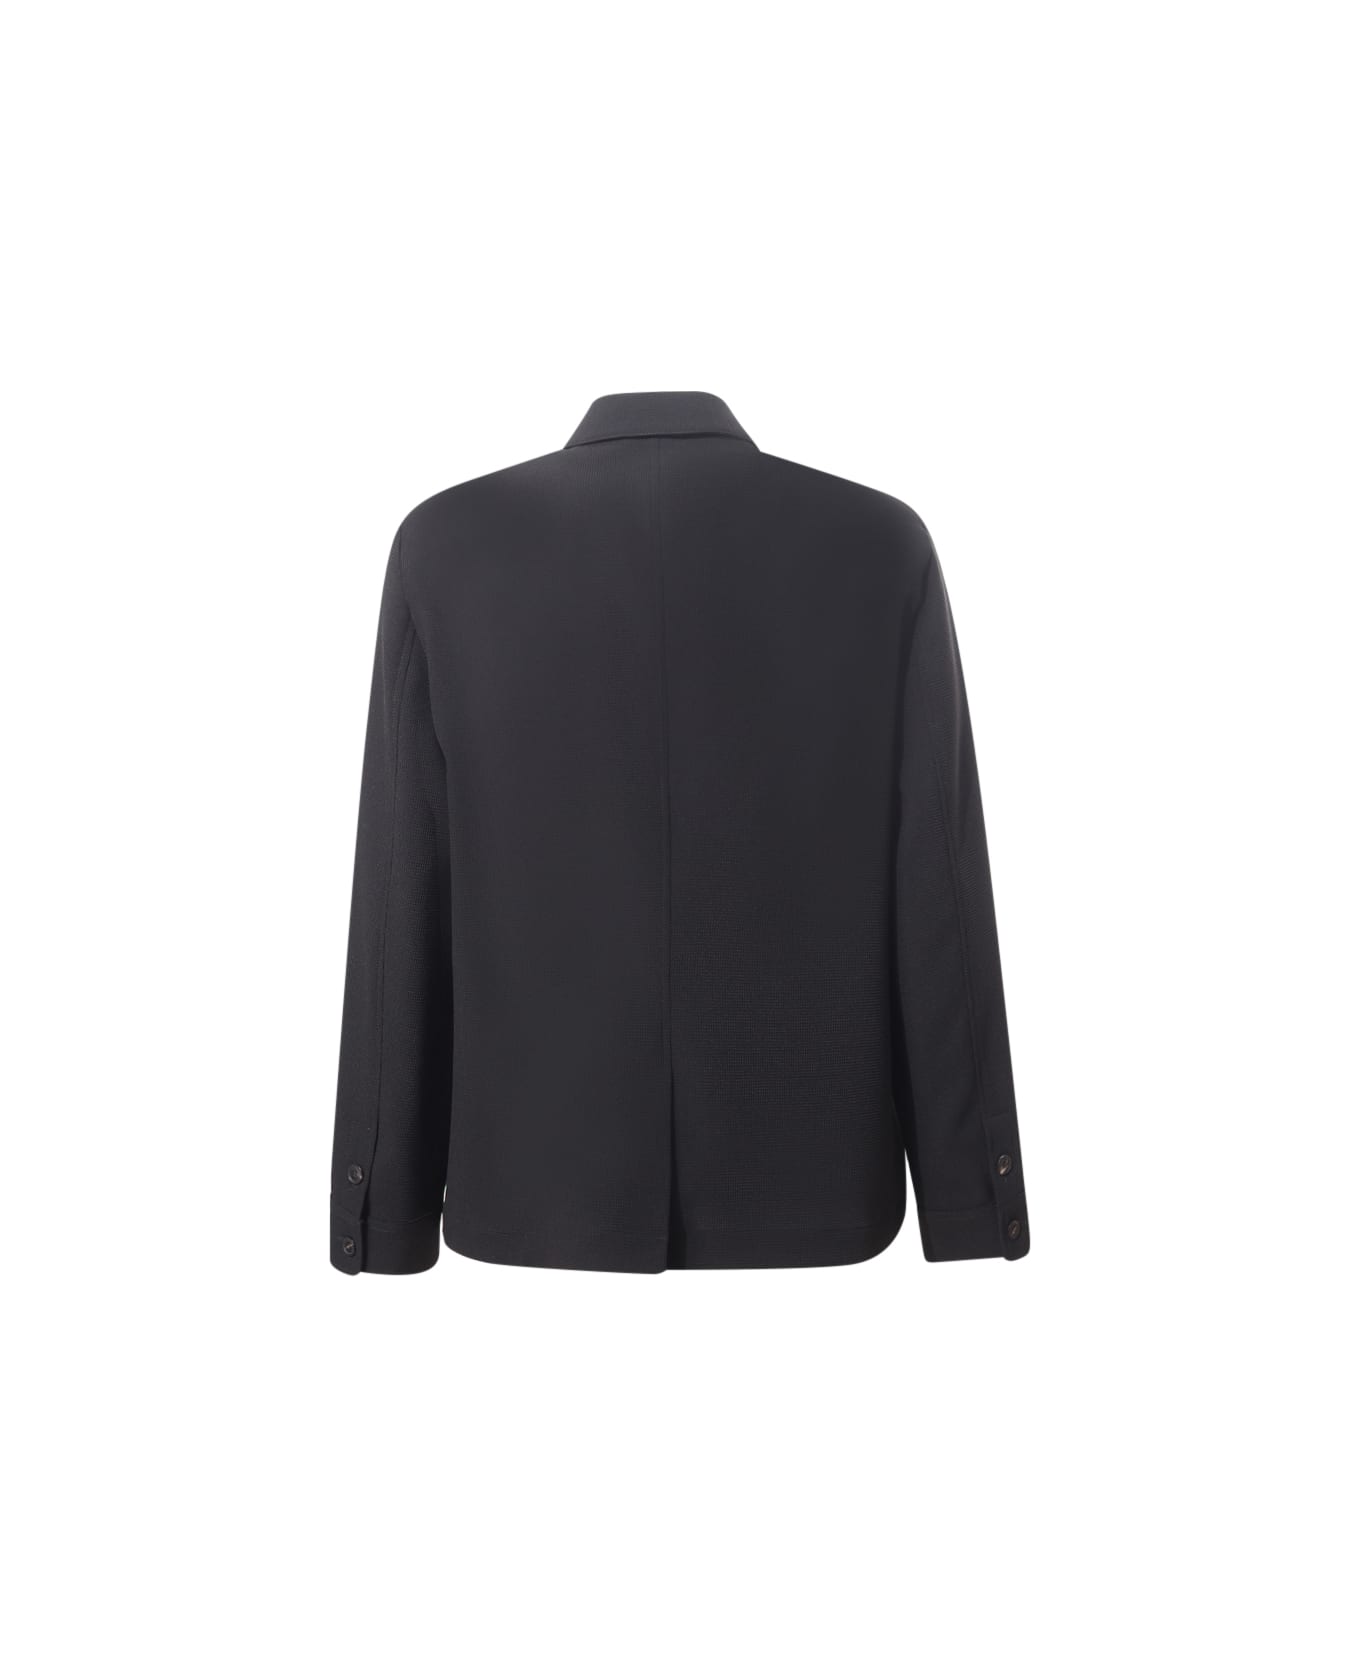 Emporio Armani Classic Collar Jacket - Nero